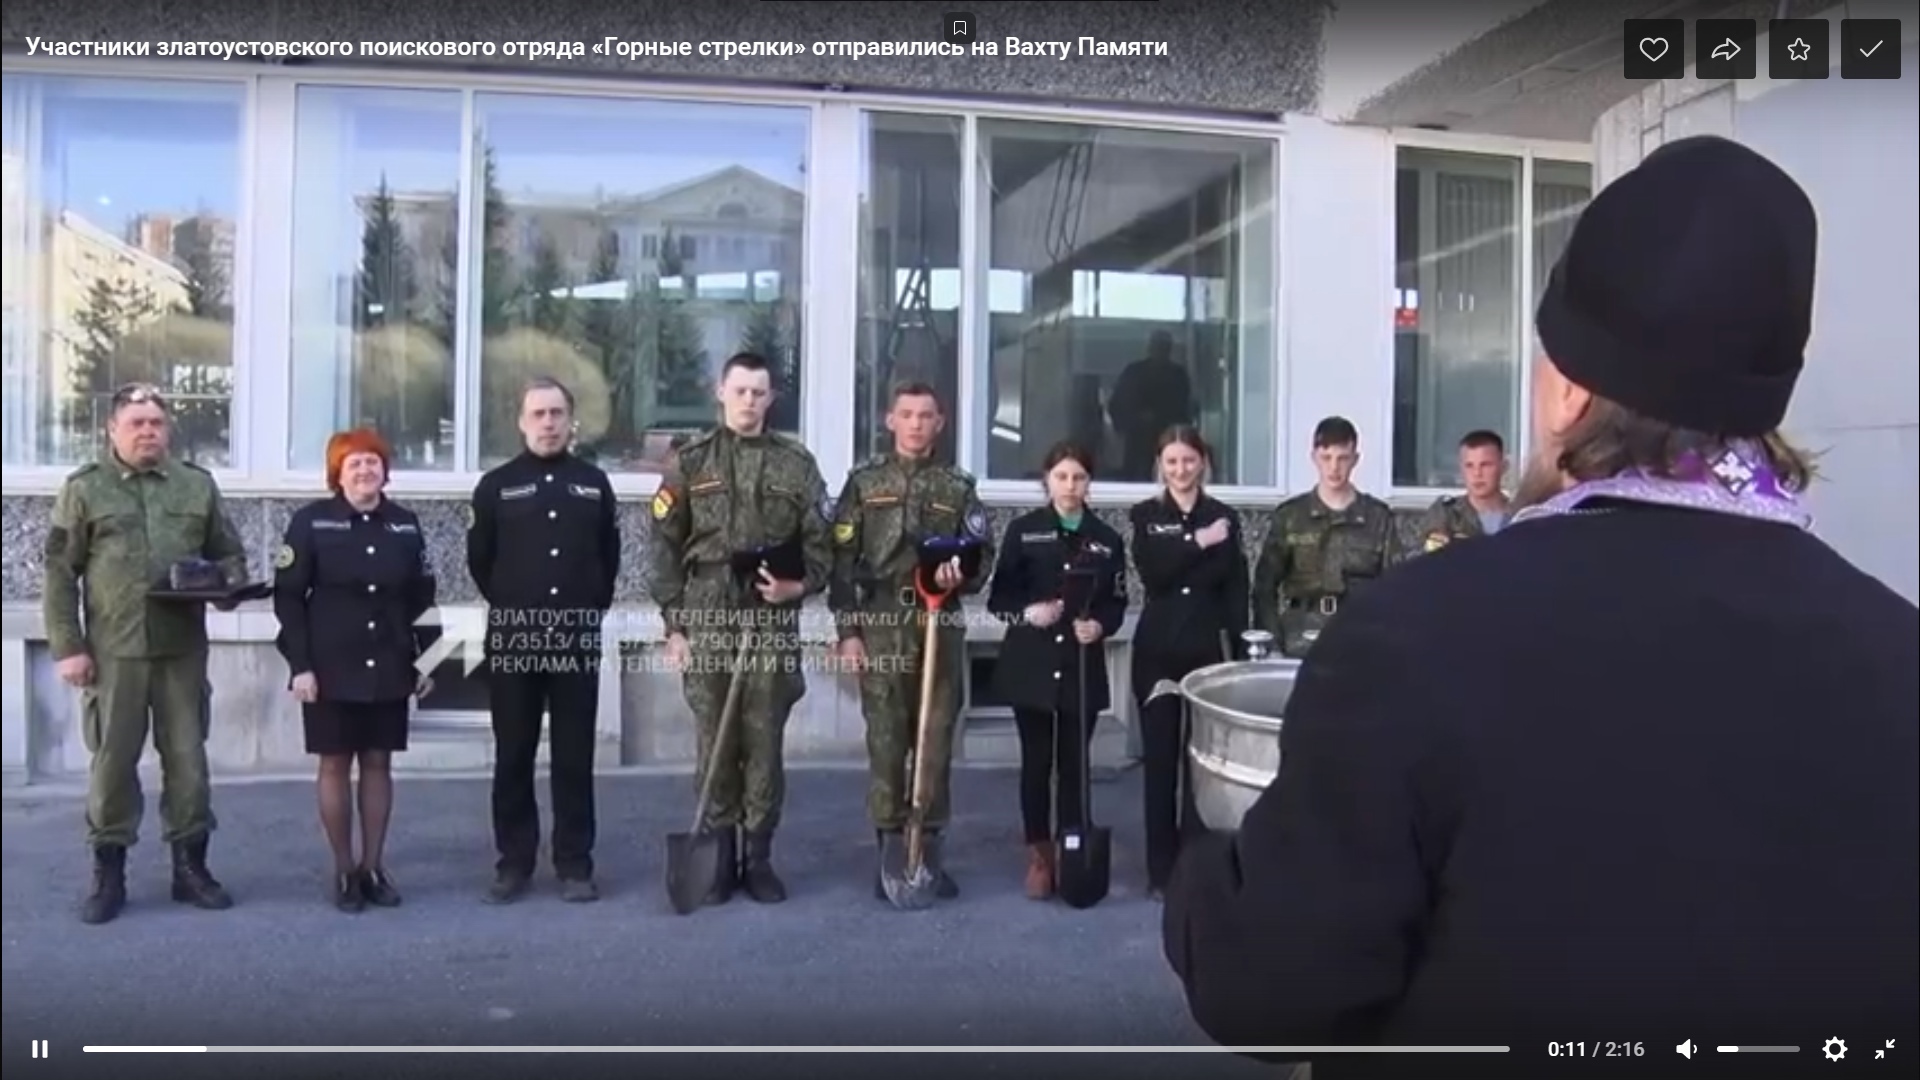 Видео: участники Златоустовского поискового отряда «Горные стрелки» отправились на Вахту Памяти